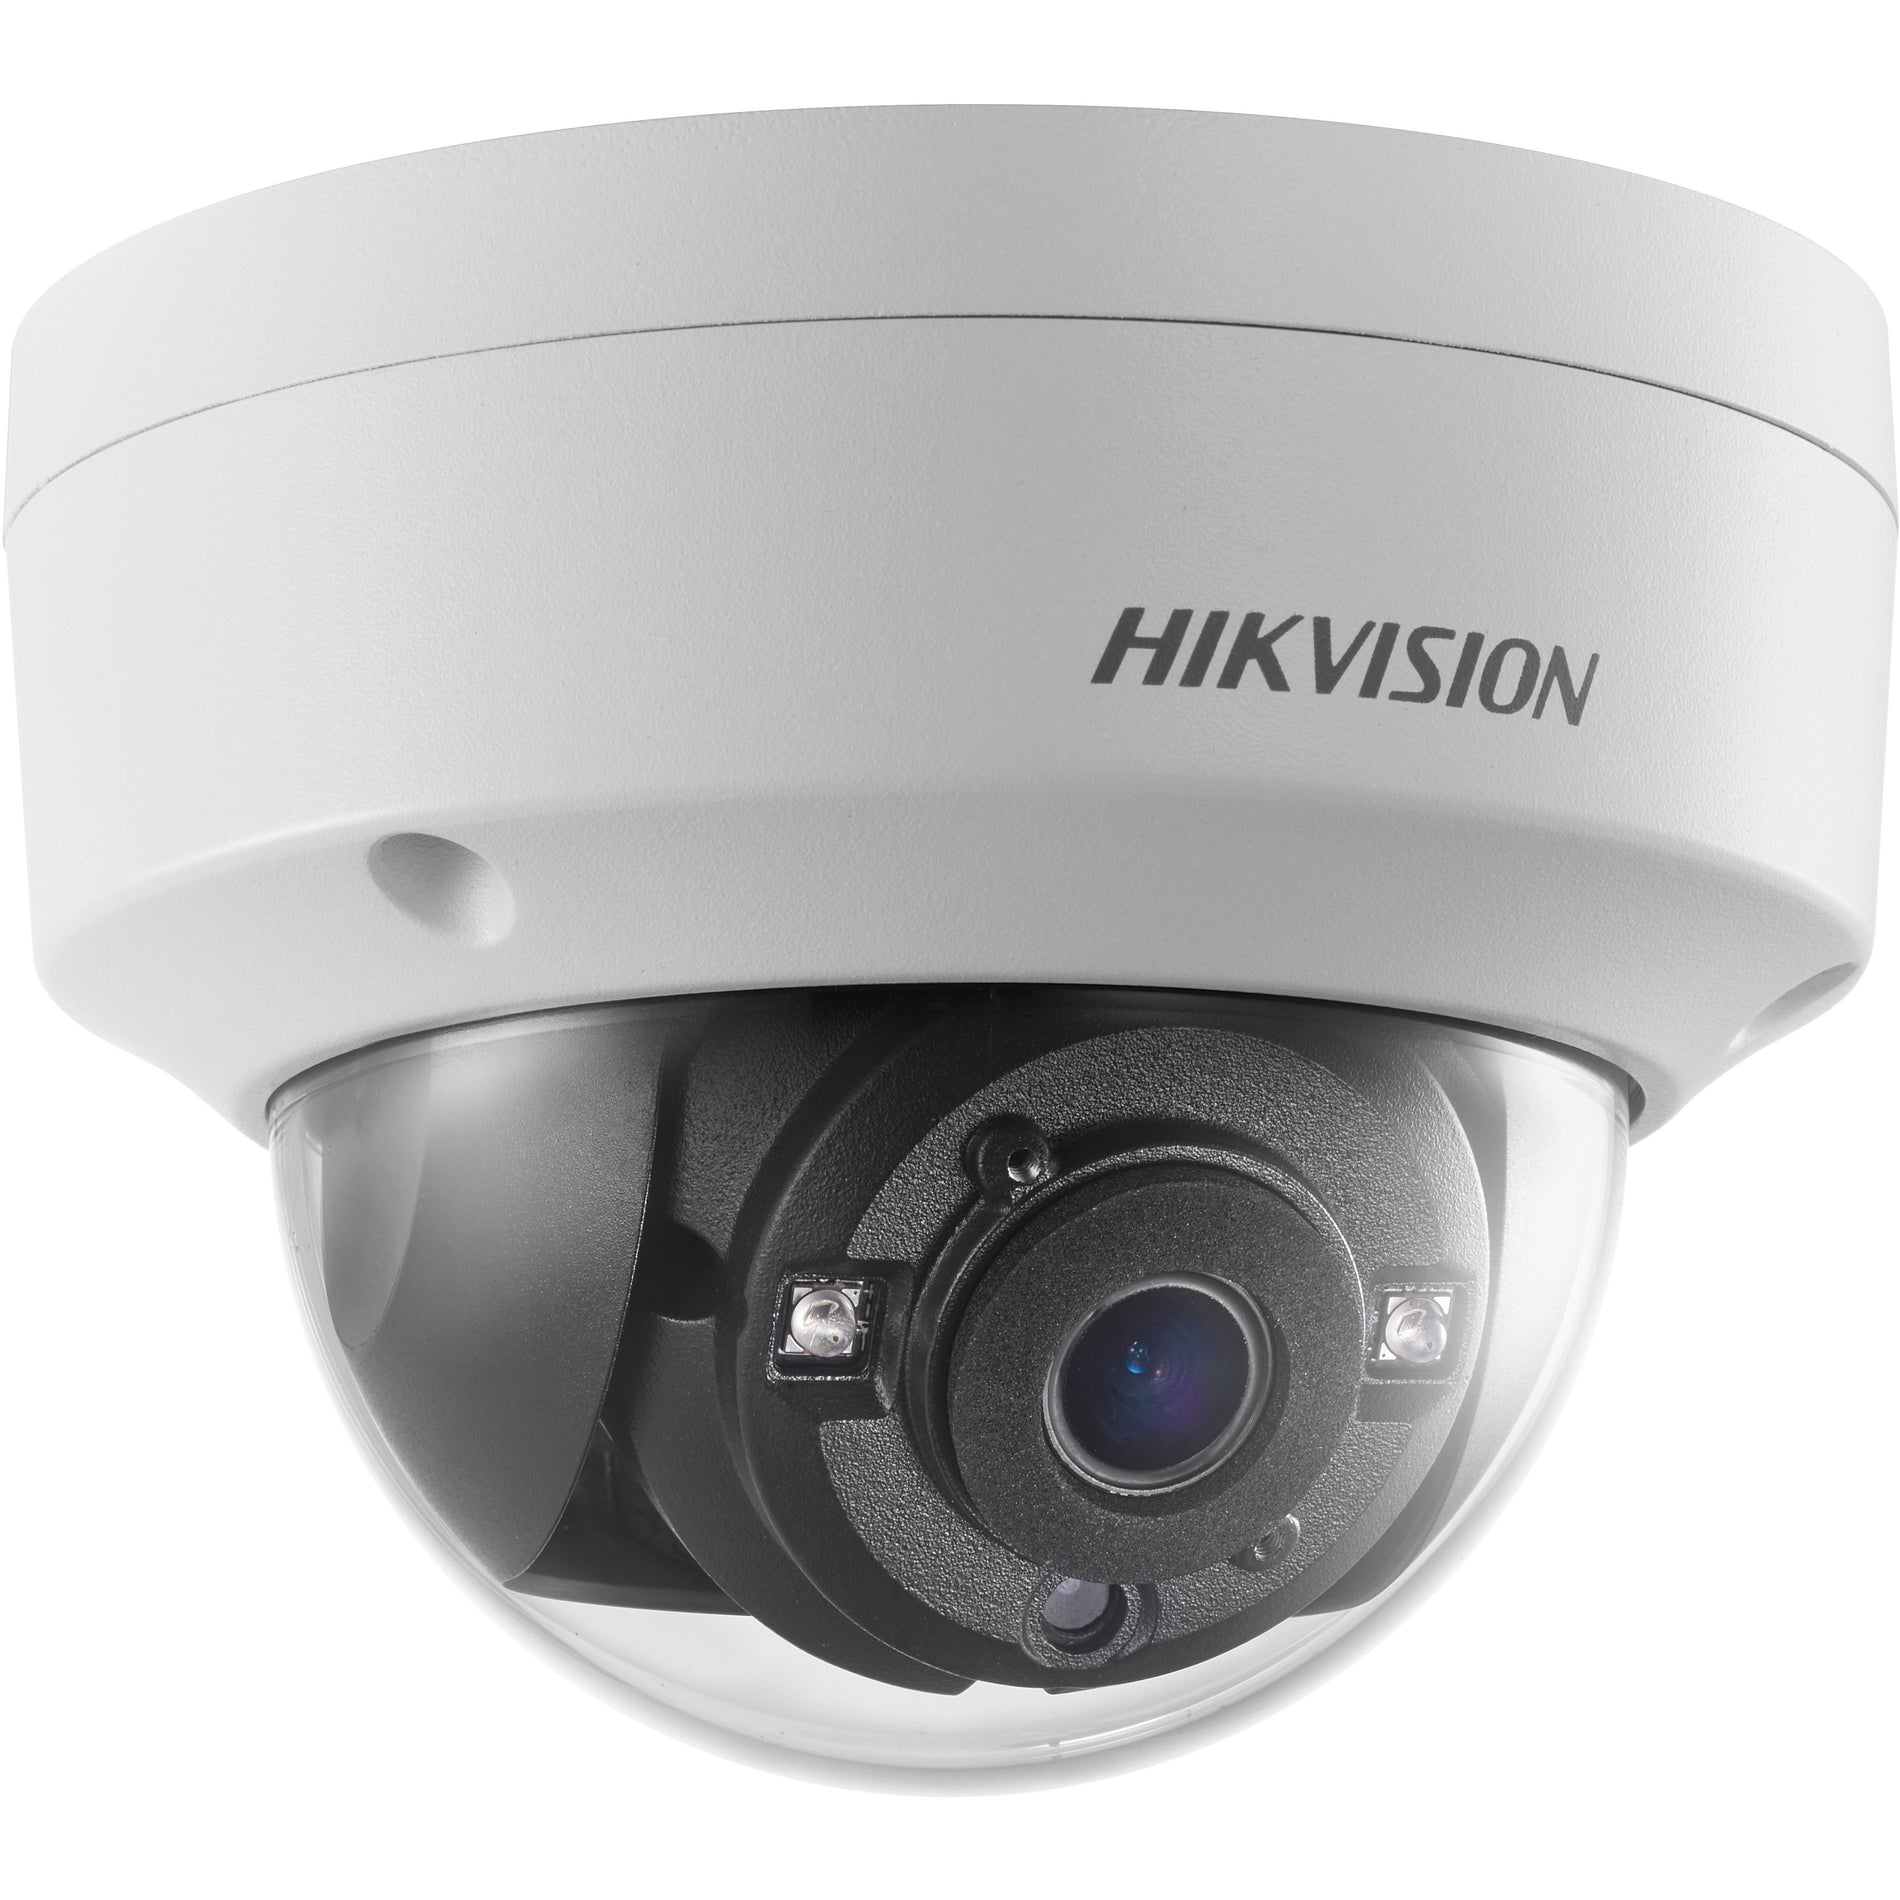 Hikvision DS-2CE57D3T-VPITF 3.6MM 2 MP EXIR Dome Camera, 70M Night Vision, WDR, IP67